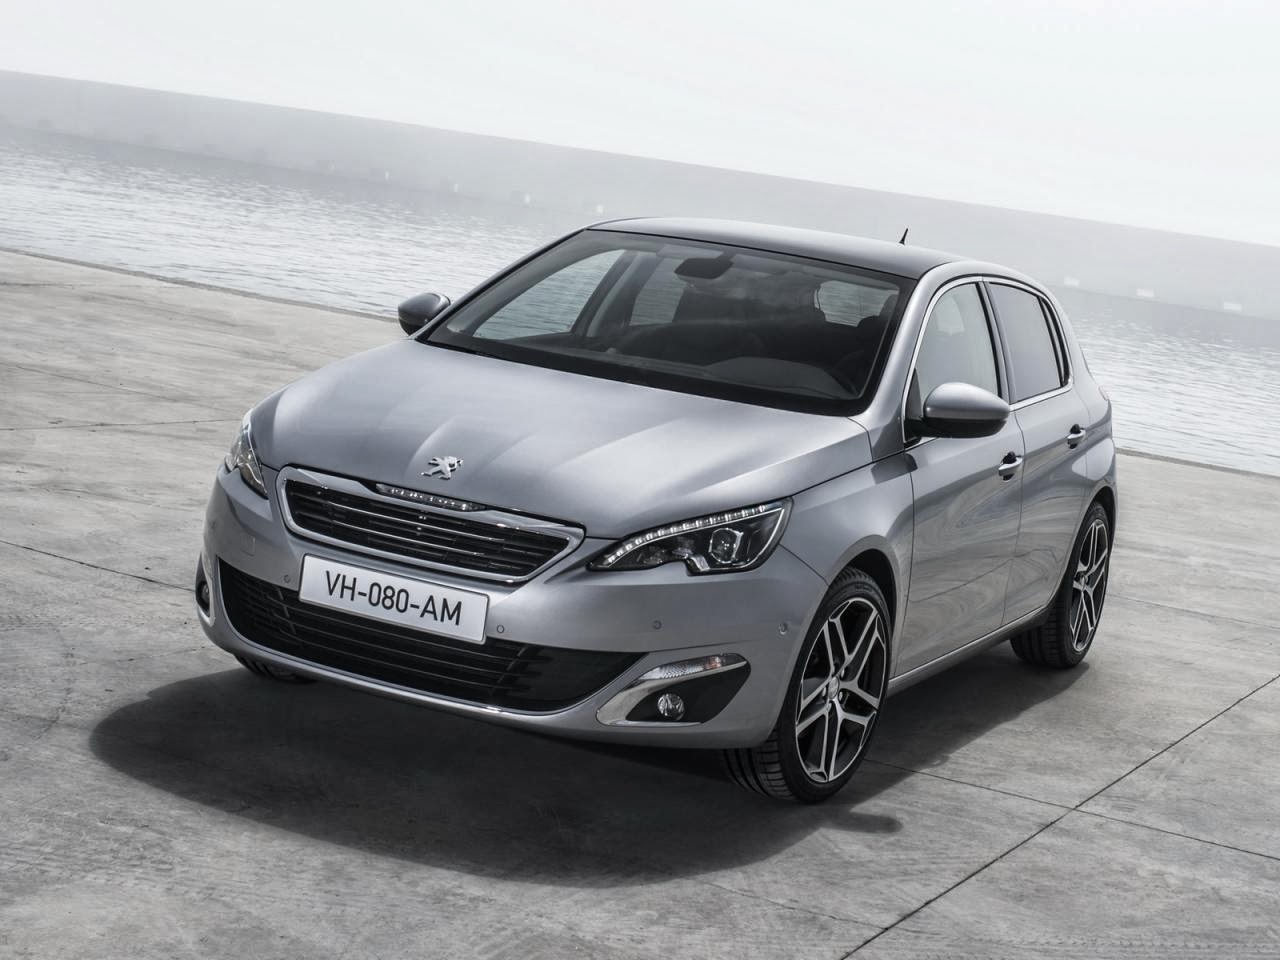 Notícia – Peugeot 308 ganha o prémio «Car of the Year» 2014